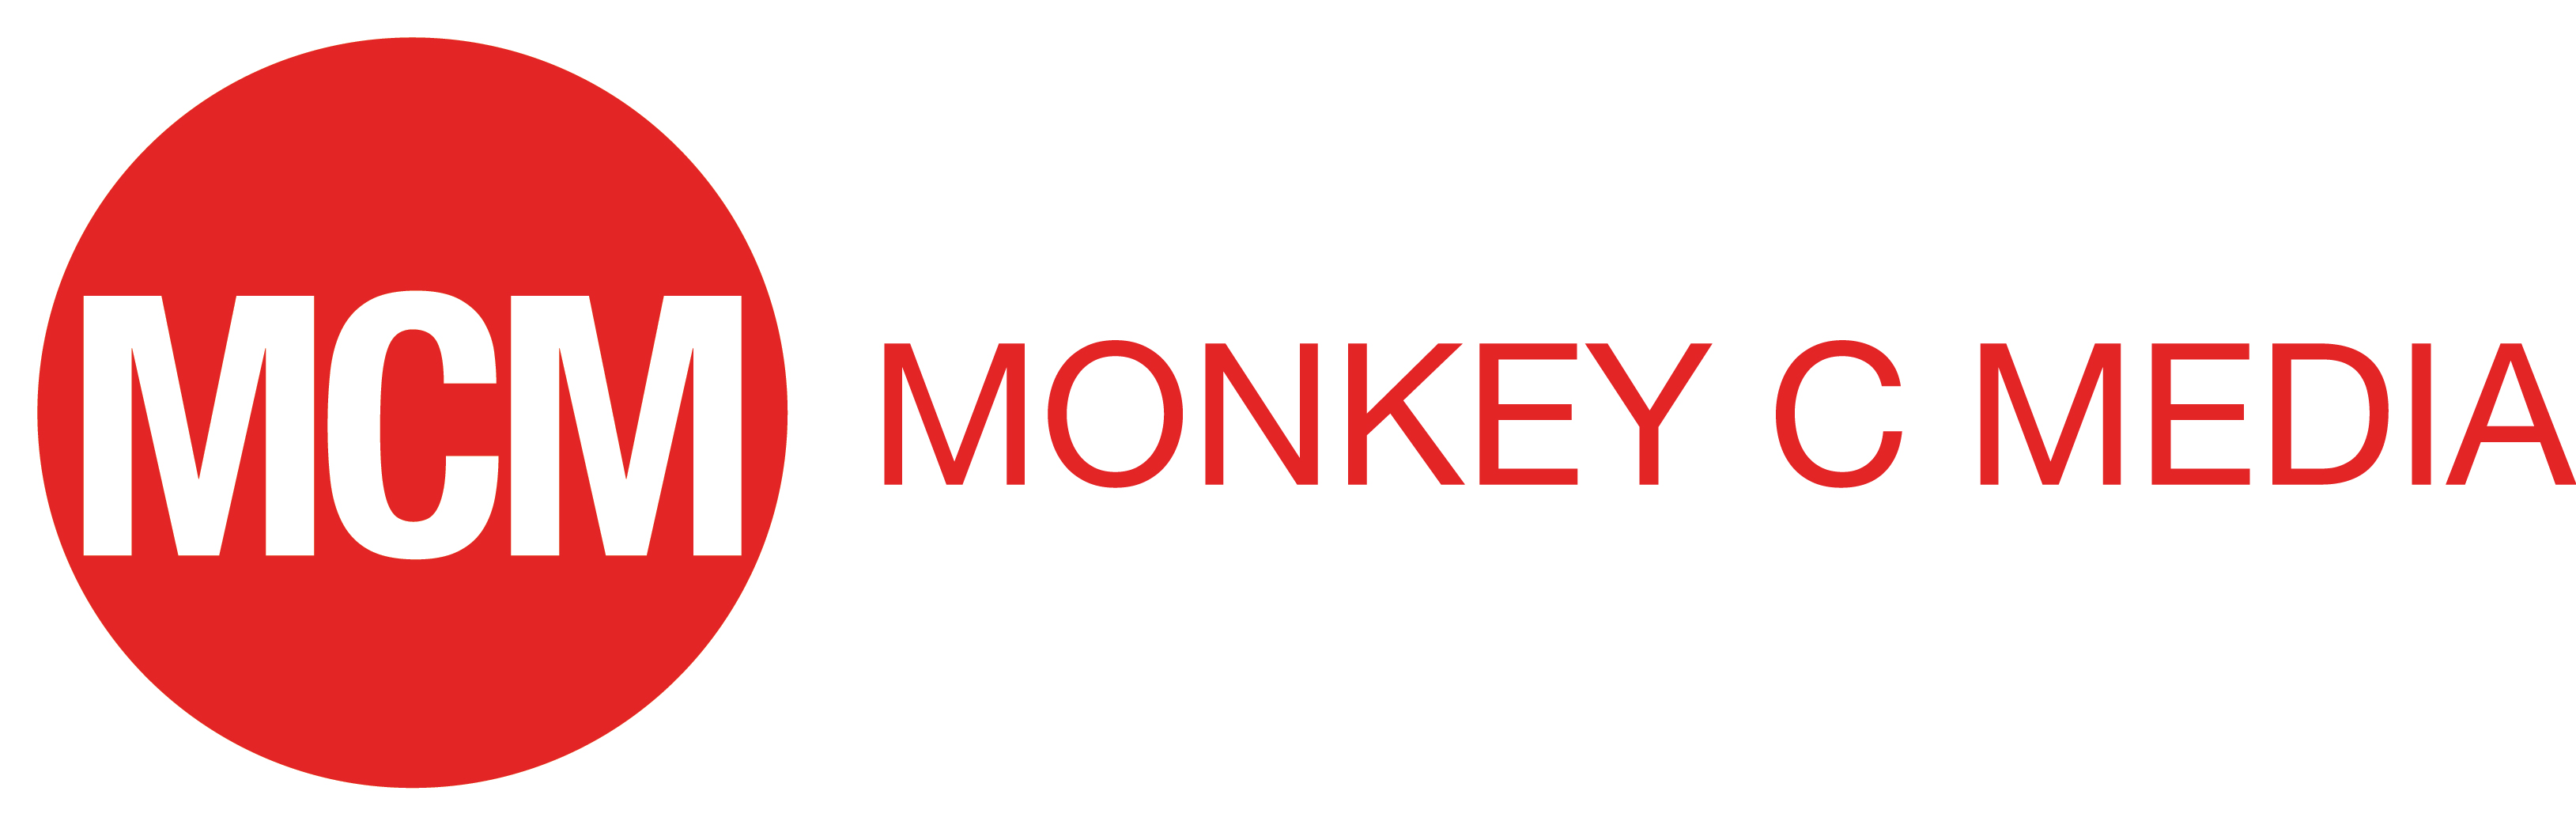 Monkey C Media